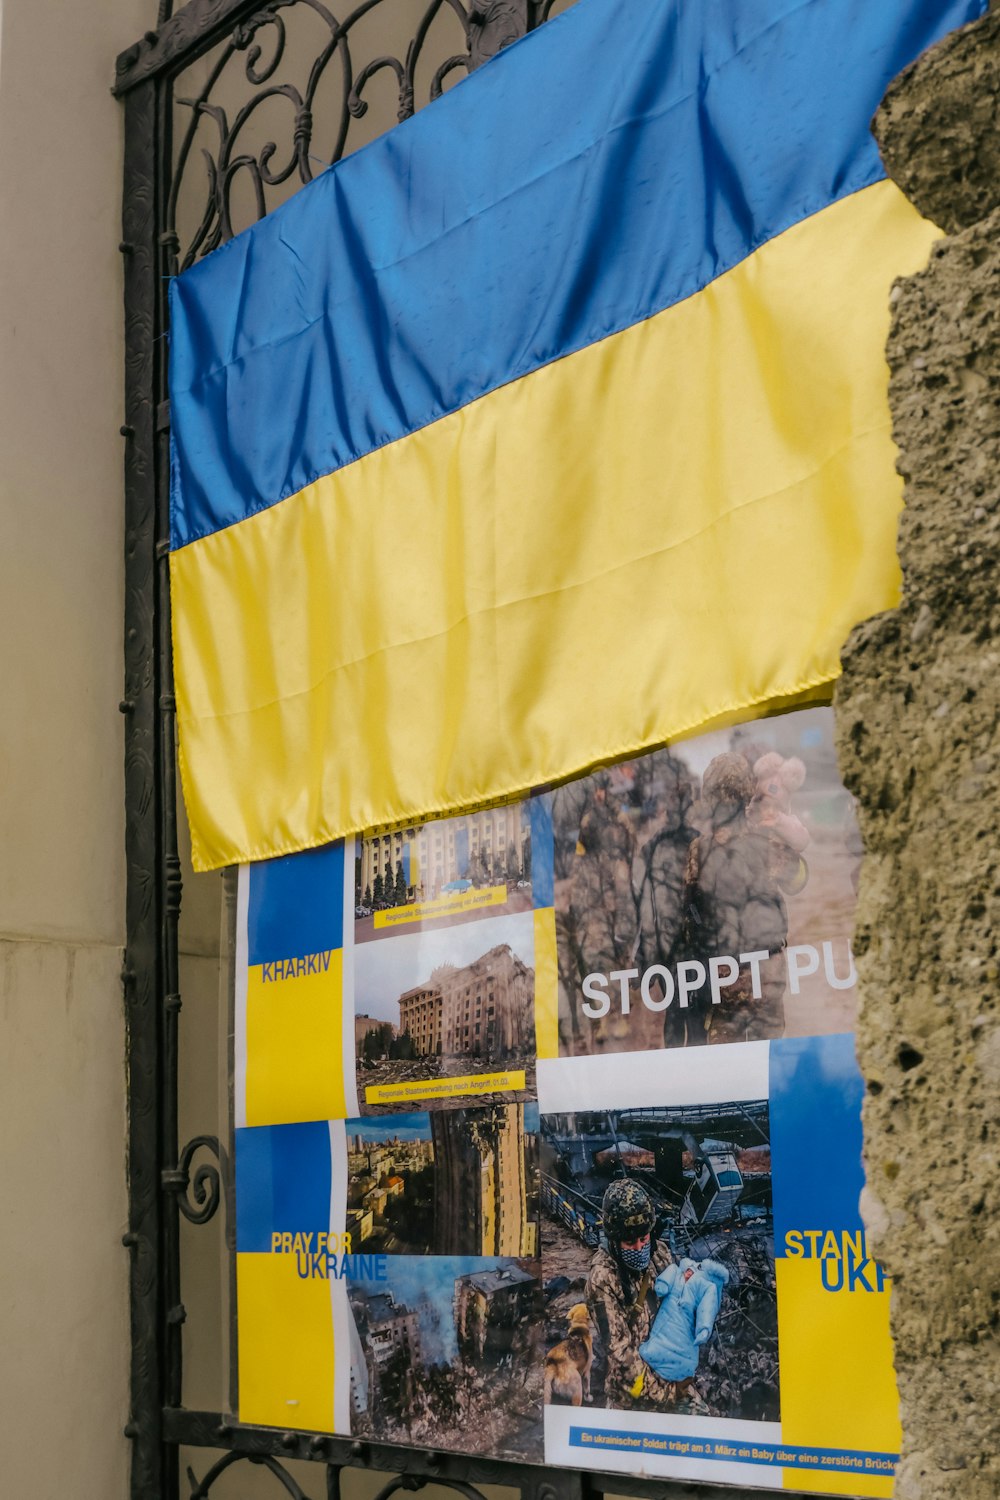 Una bandera azul y amarilla colgada en una puerta